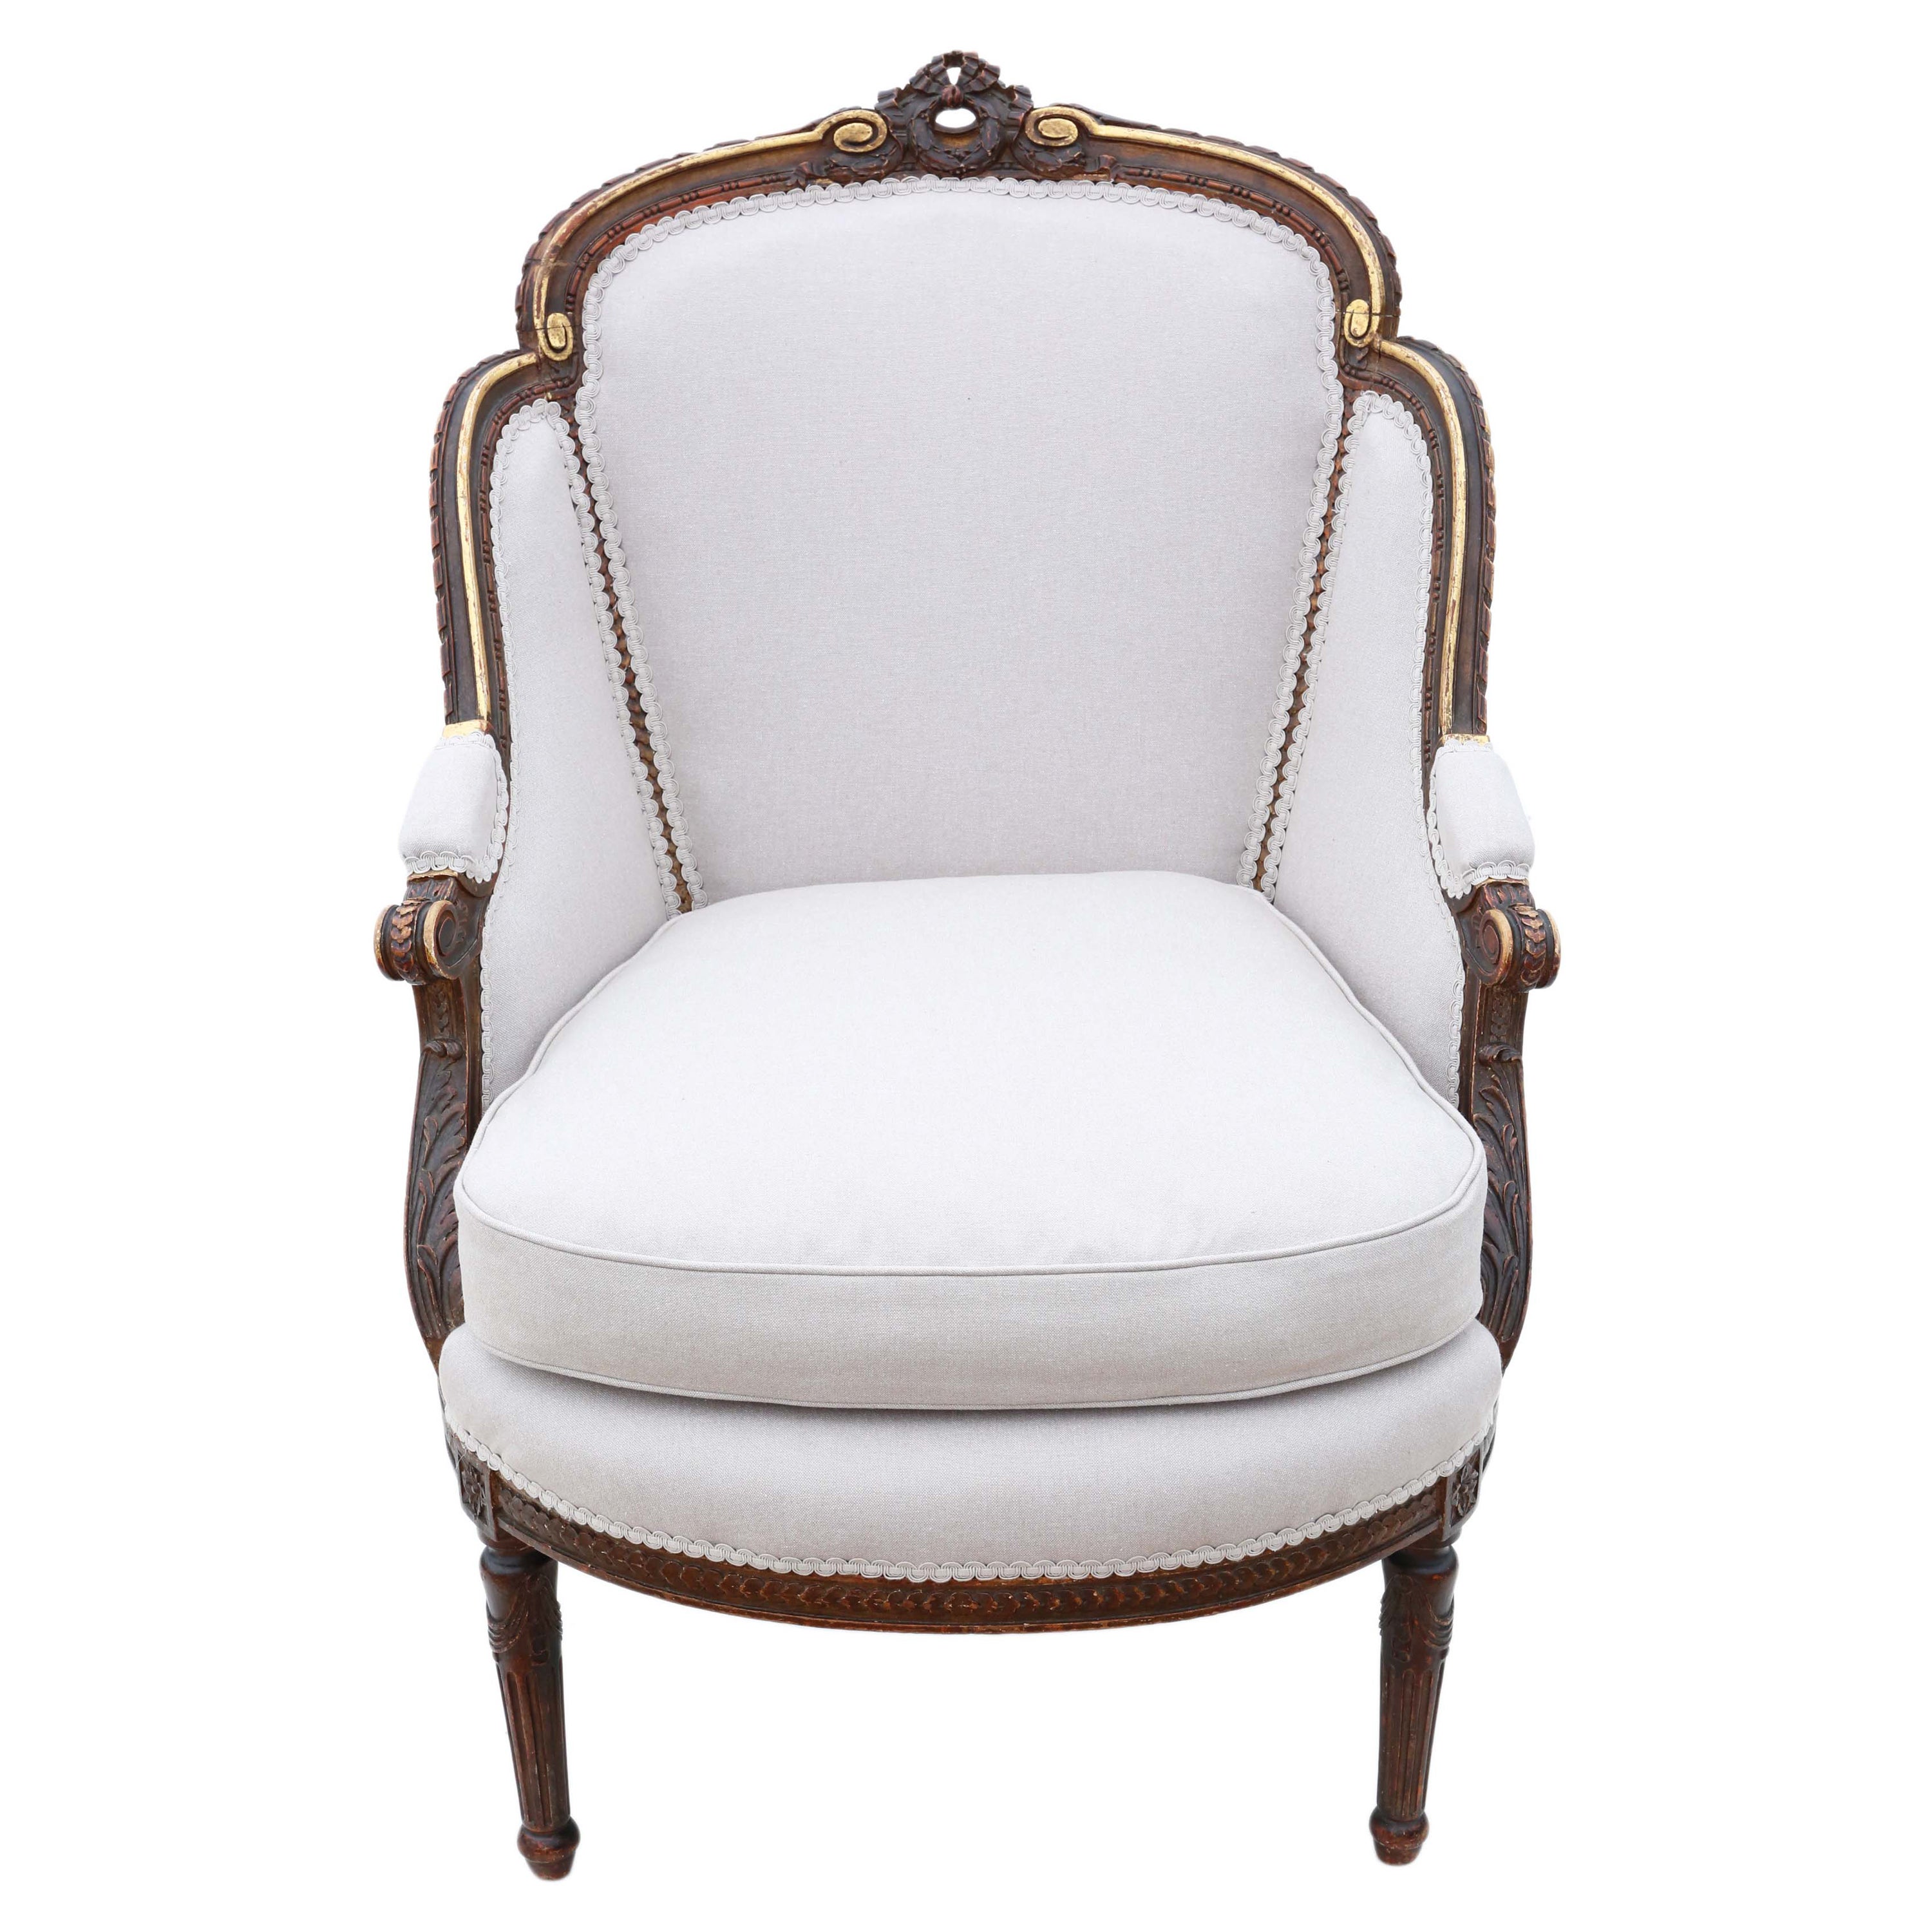 Antique Rare Gilt 19th Century Chair Armchair